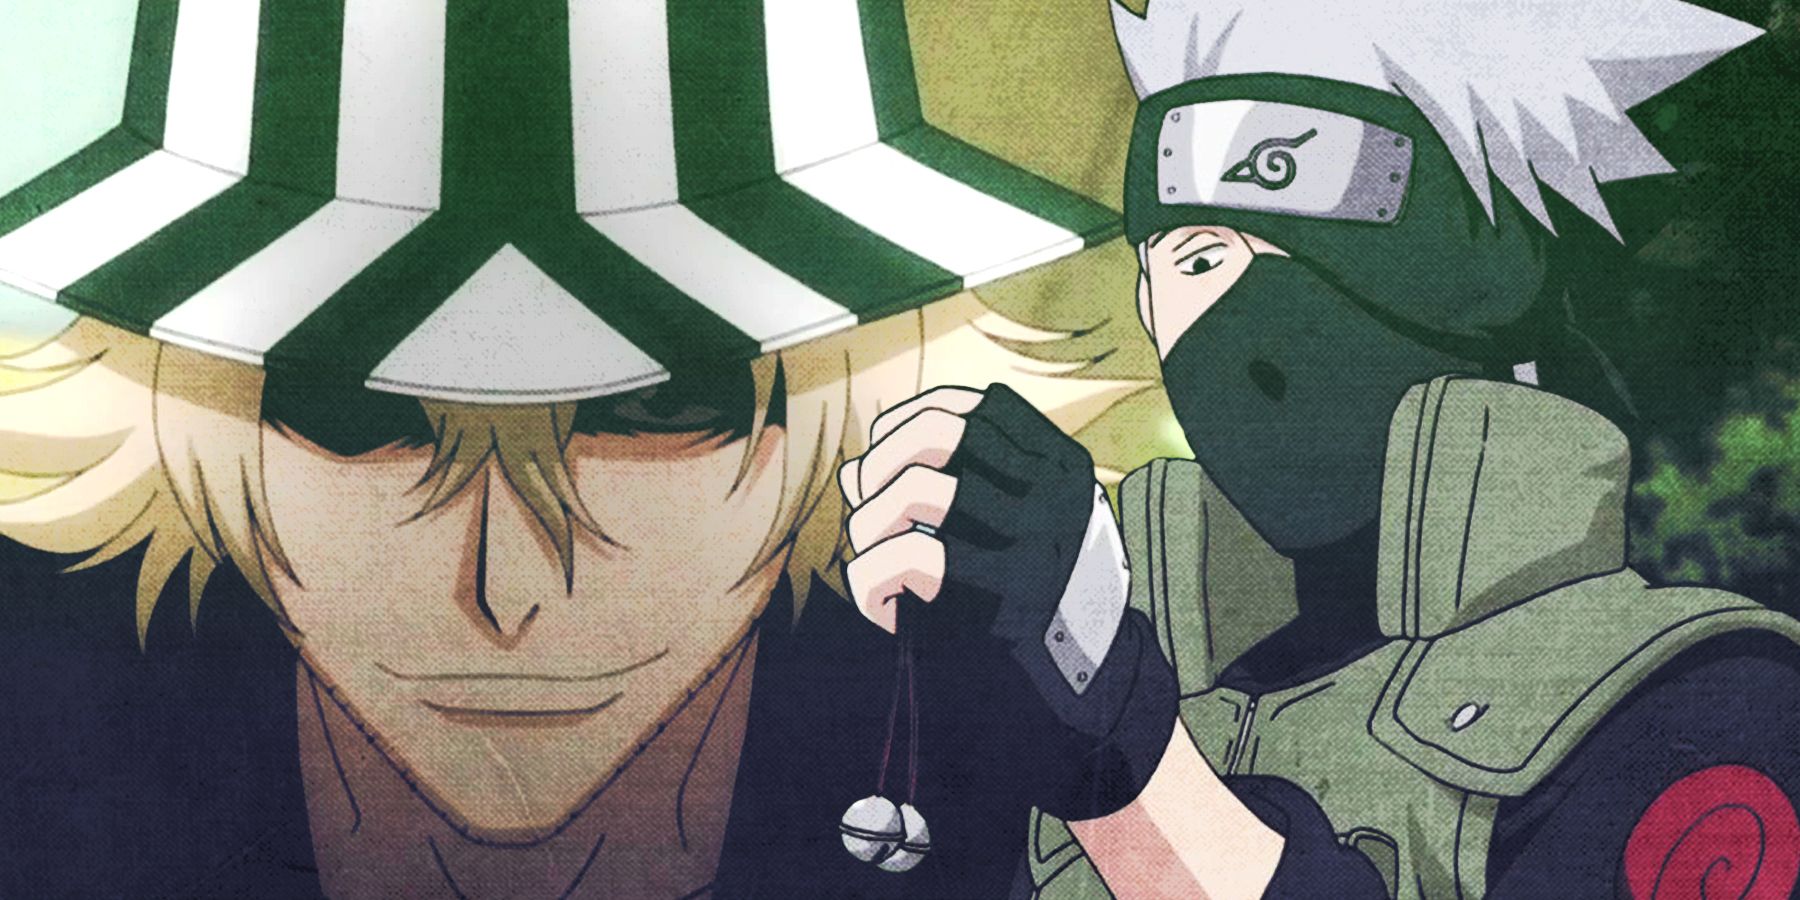 Bleach's Kisuke Urahara vs Naruto's Kakashi Hatake - Who's the Better Shonen Mentor